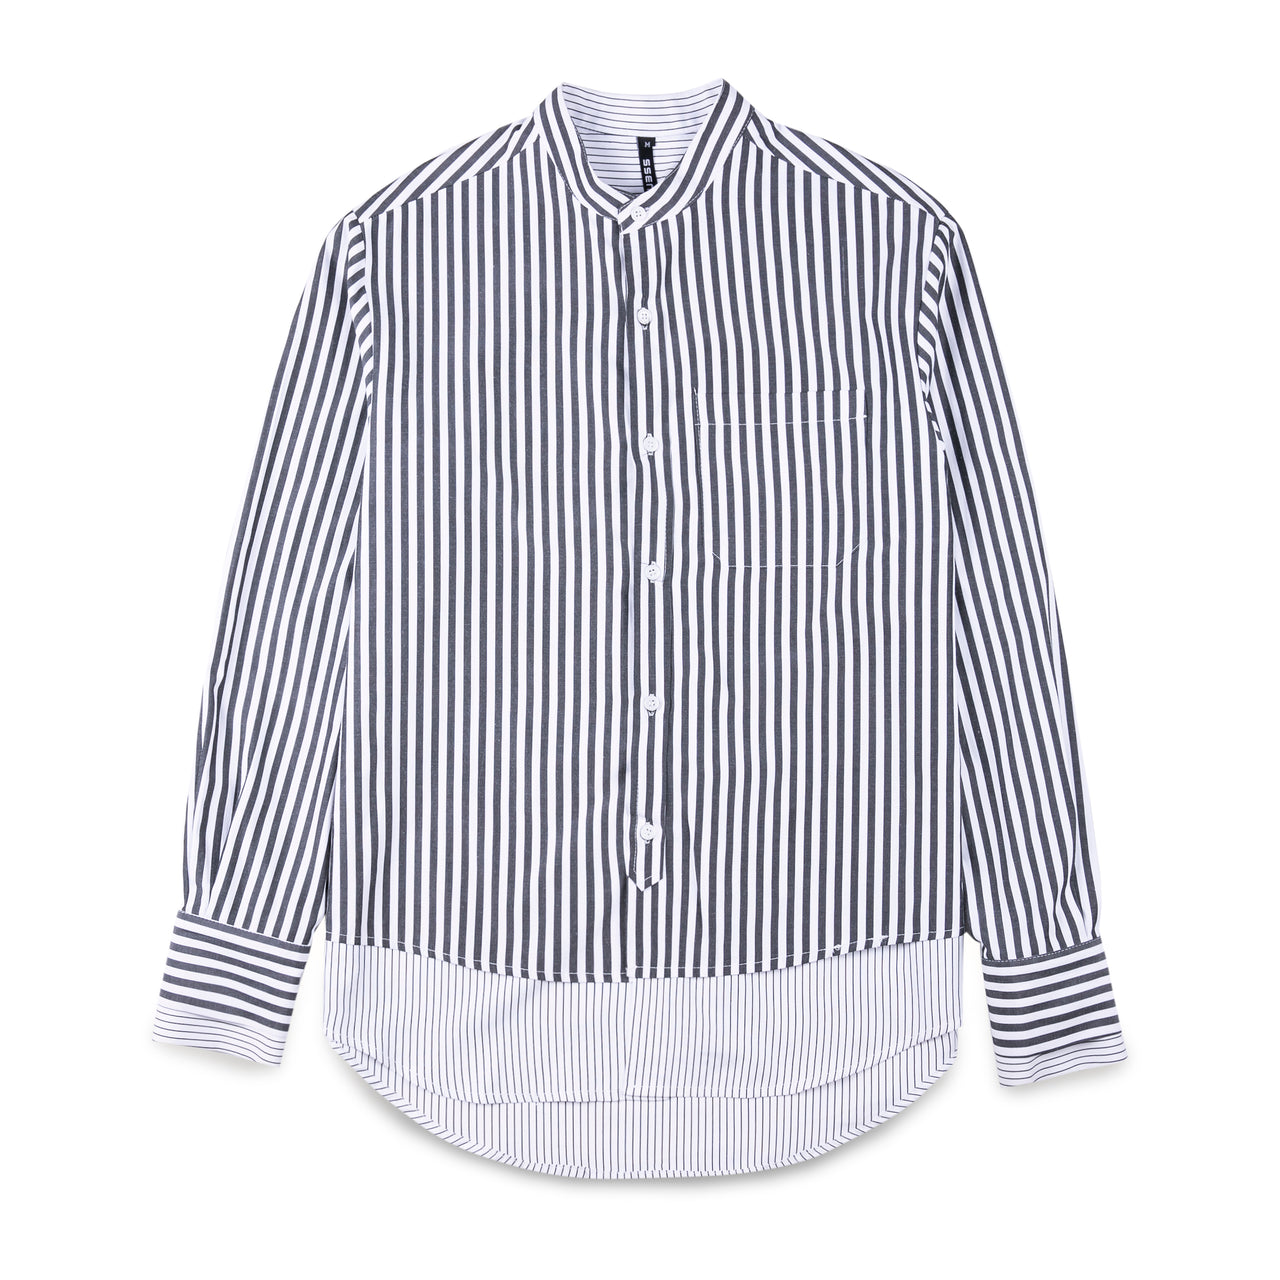 Ssense Layer Striped Shirt